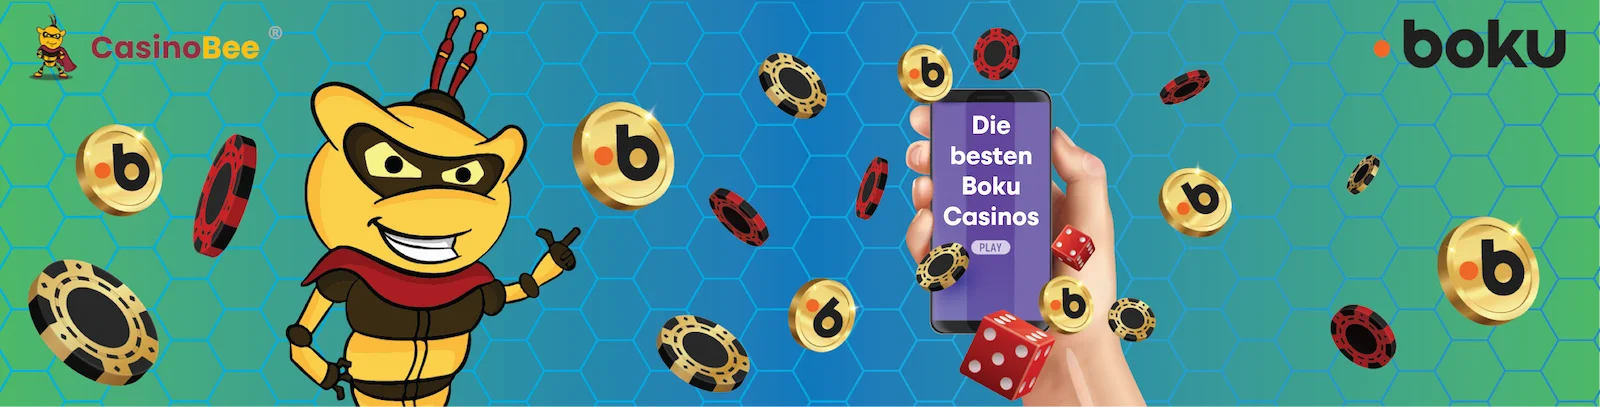 Wichtige Infos zur Zahlungsmethode Boku in Online-Casinos